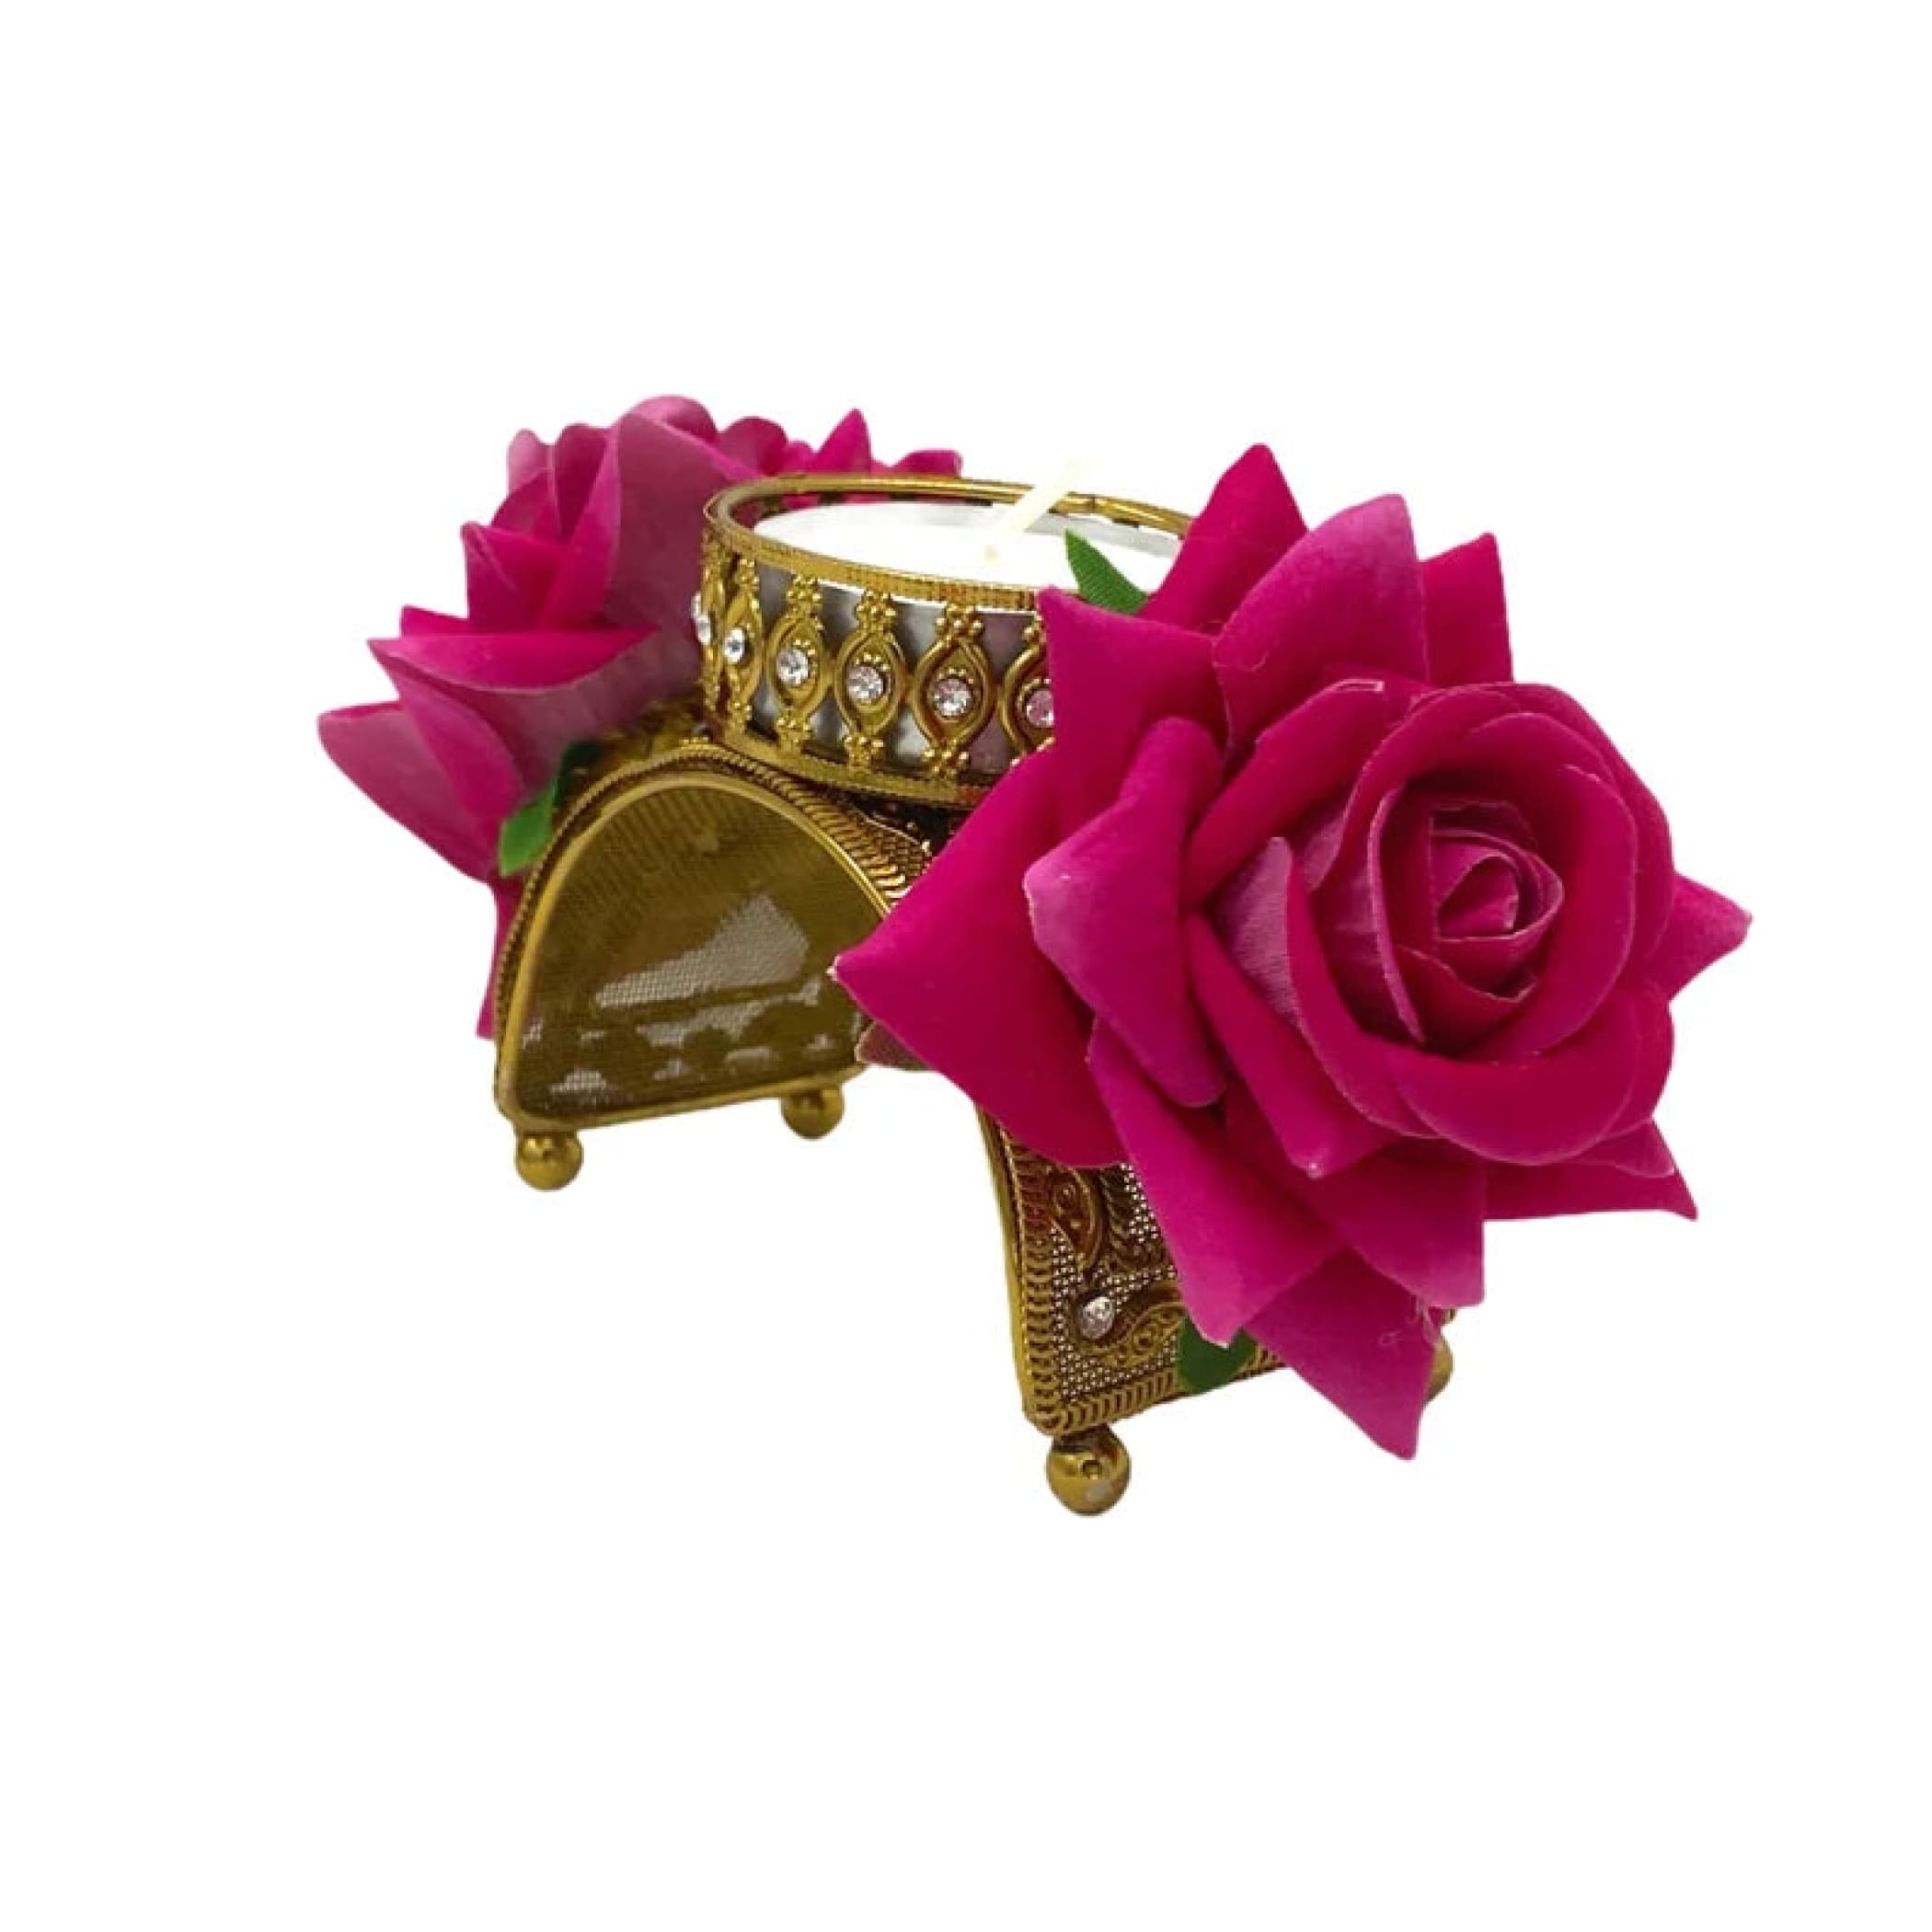 Rose diwali candle holder diya decor decoration favors